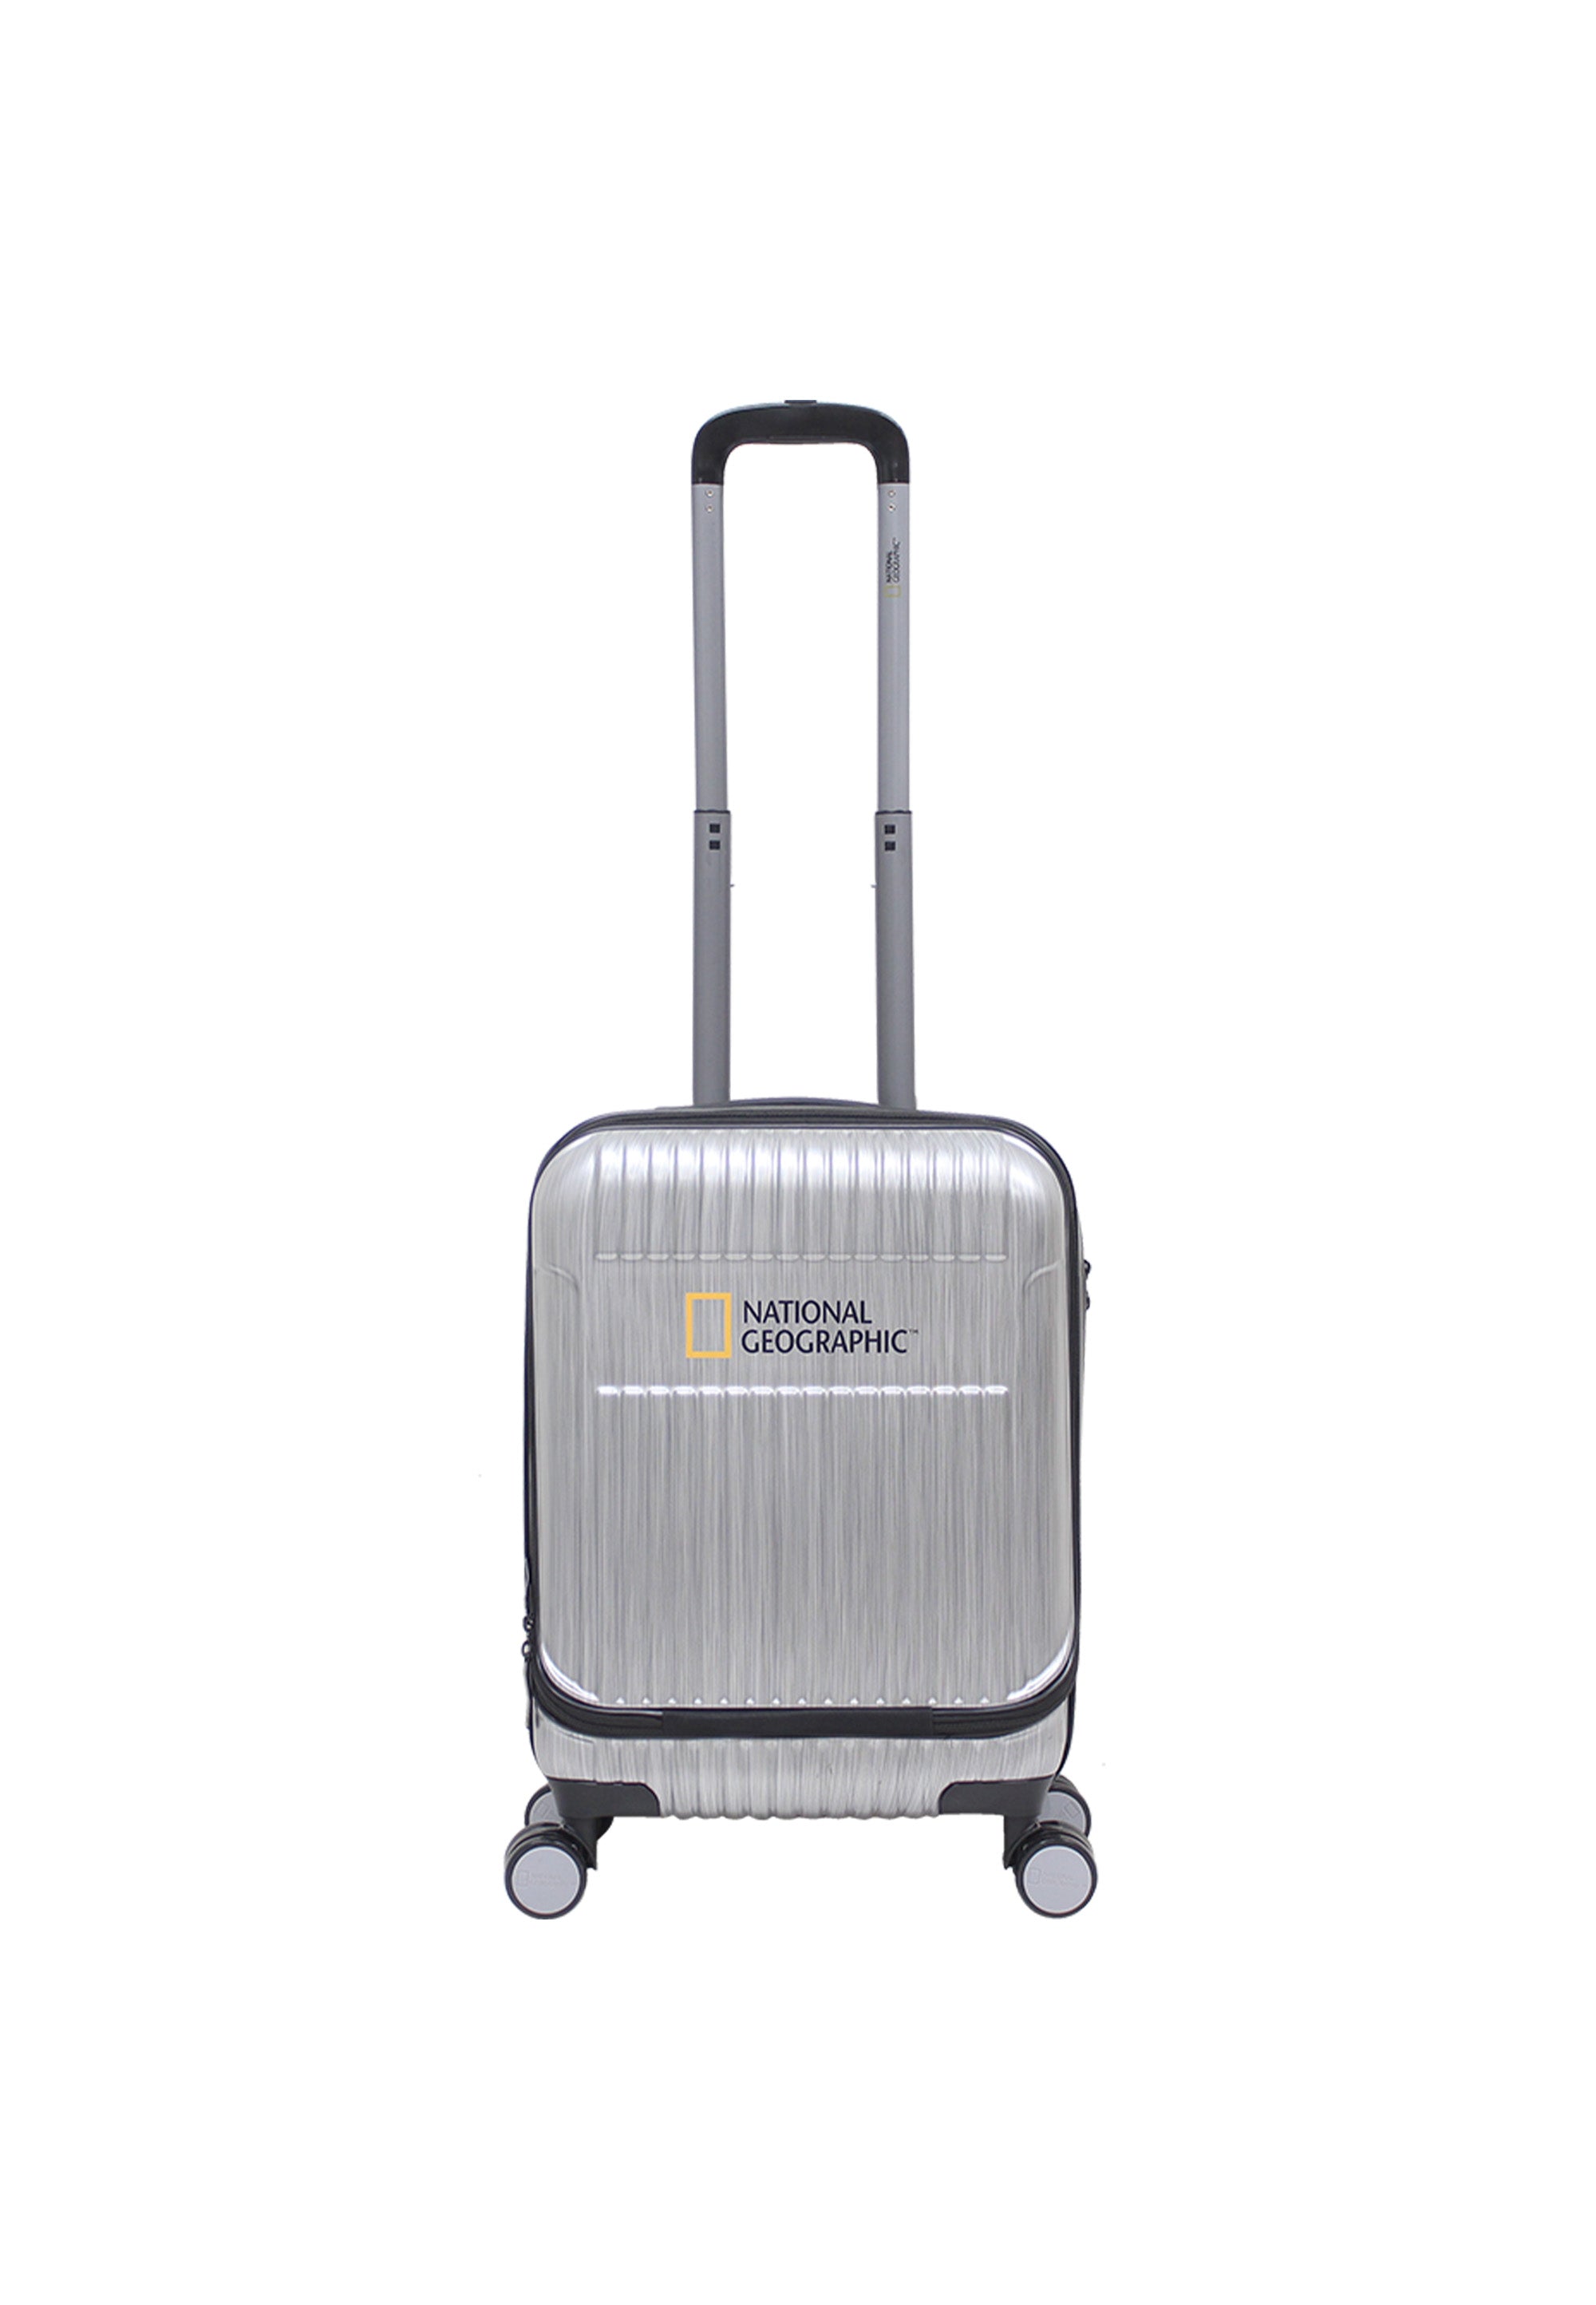 National Geographic - Transit Handgepäck mit Laptopfach Hartschalenkoffer / Trolley / Reisekoffer - 55cm - (Small)Silber